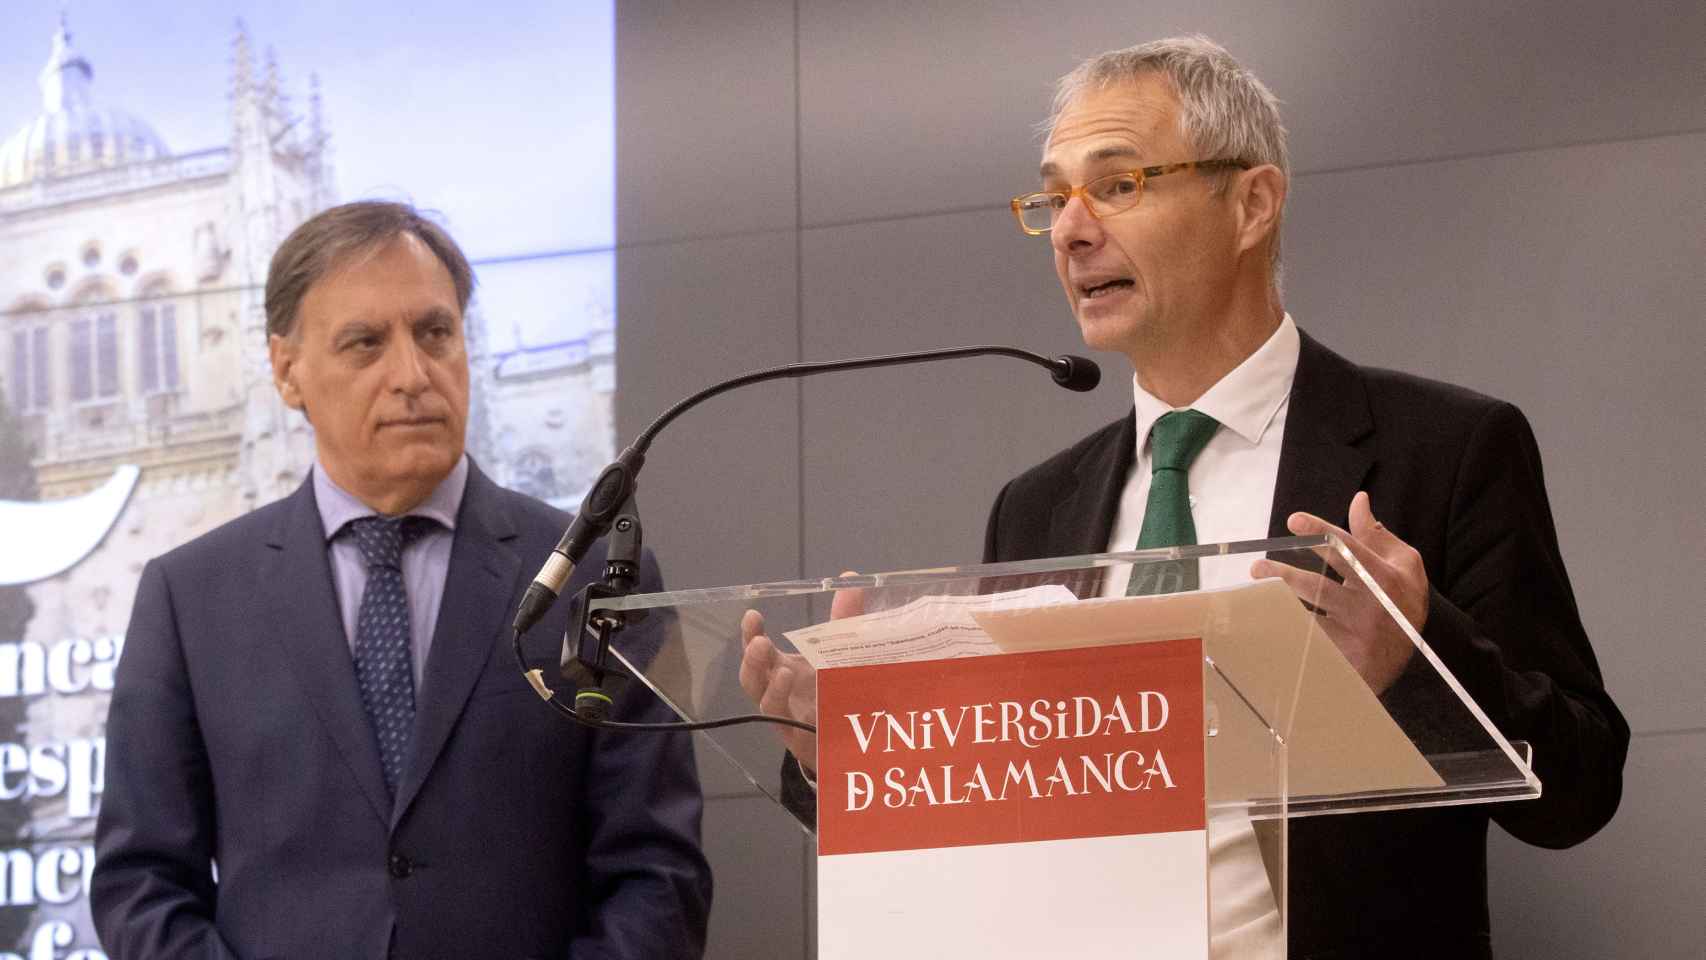 El alcalde de Salamanca, Carlos García Carbayo, y el rector, Ricardo Rivero, en la clausura de la jornada sobre Iberofonía en el CIE